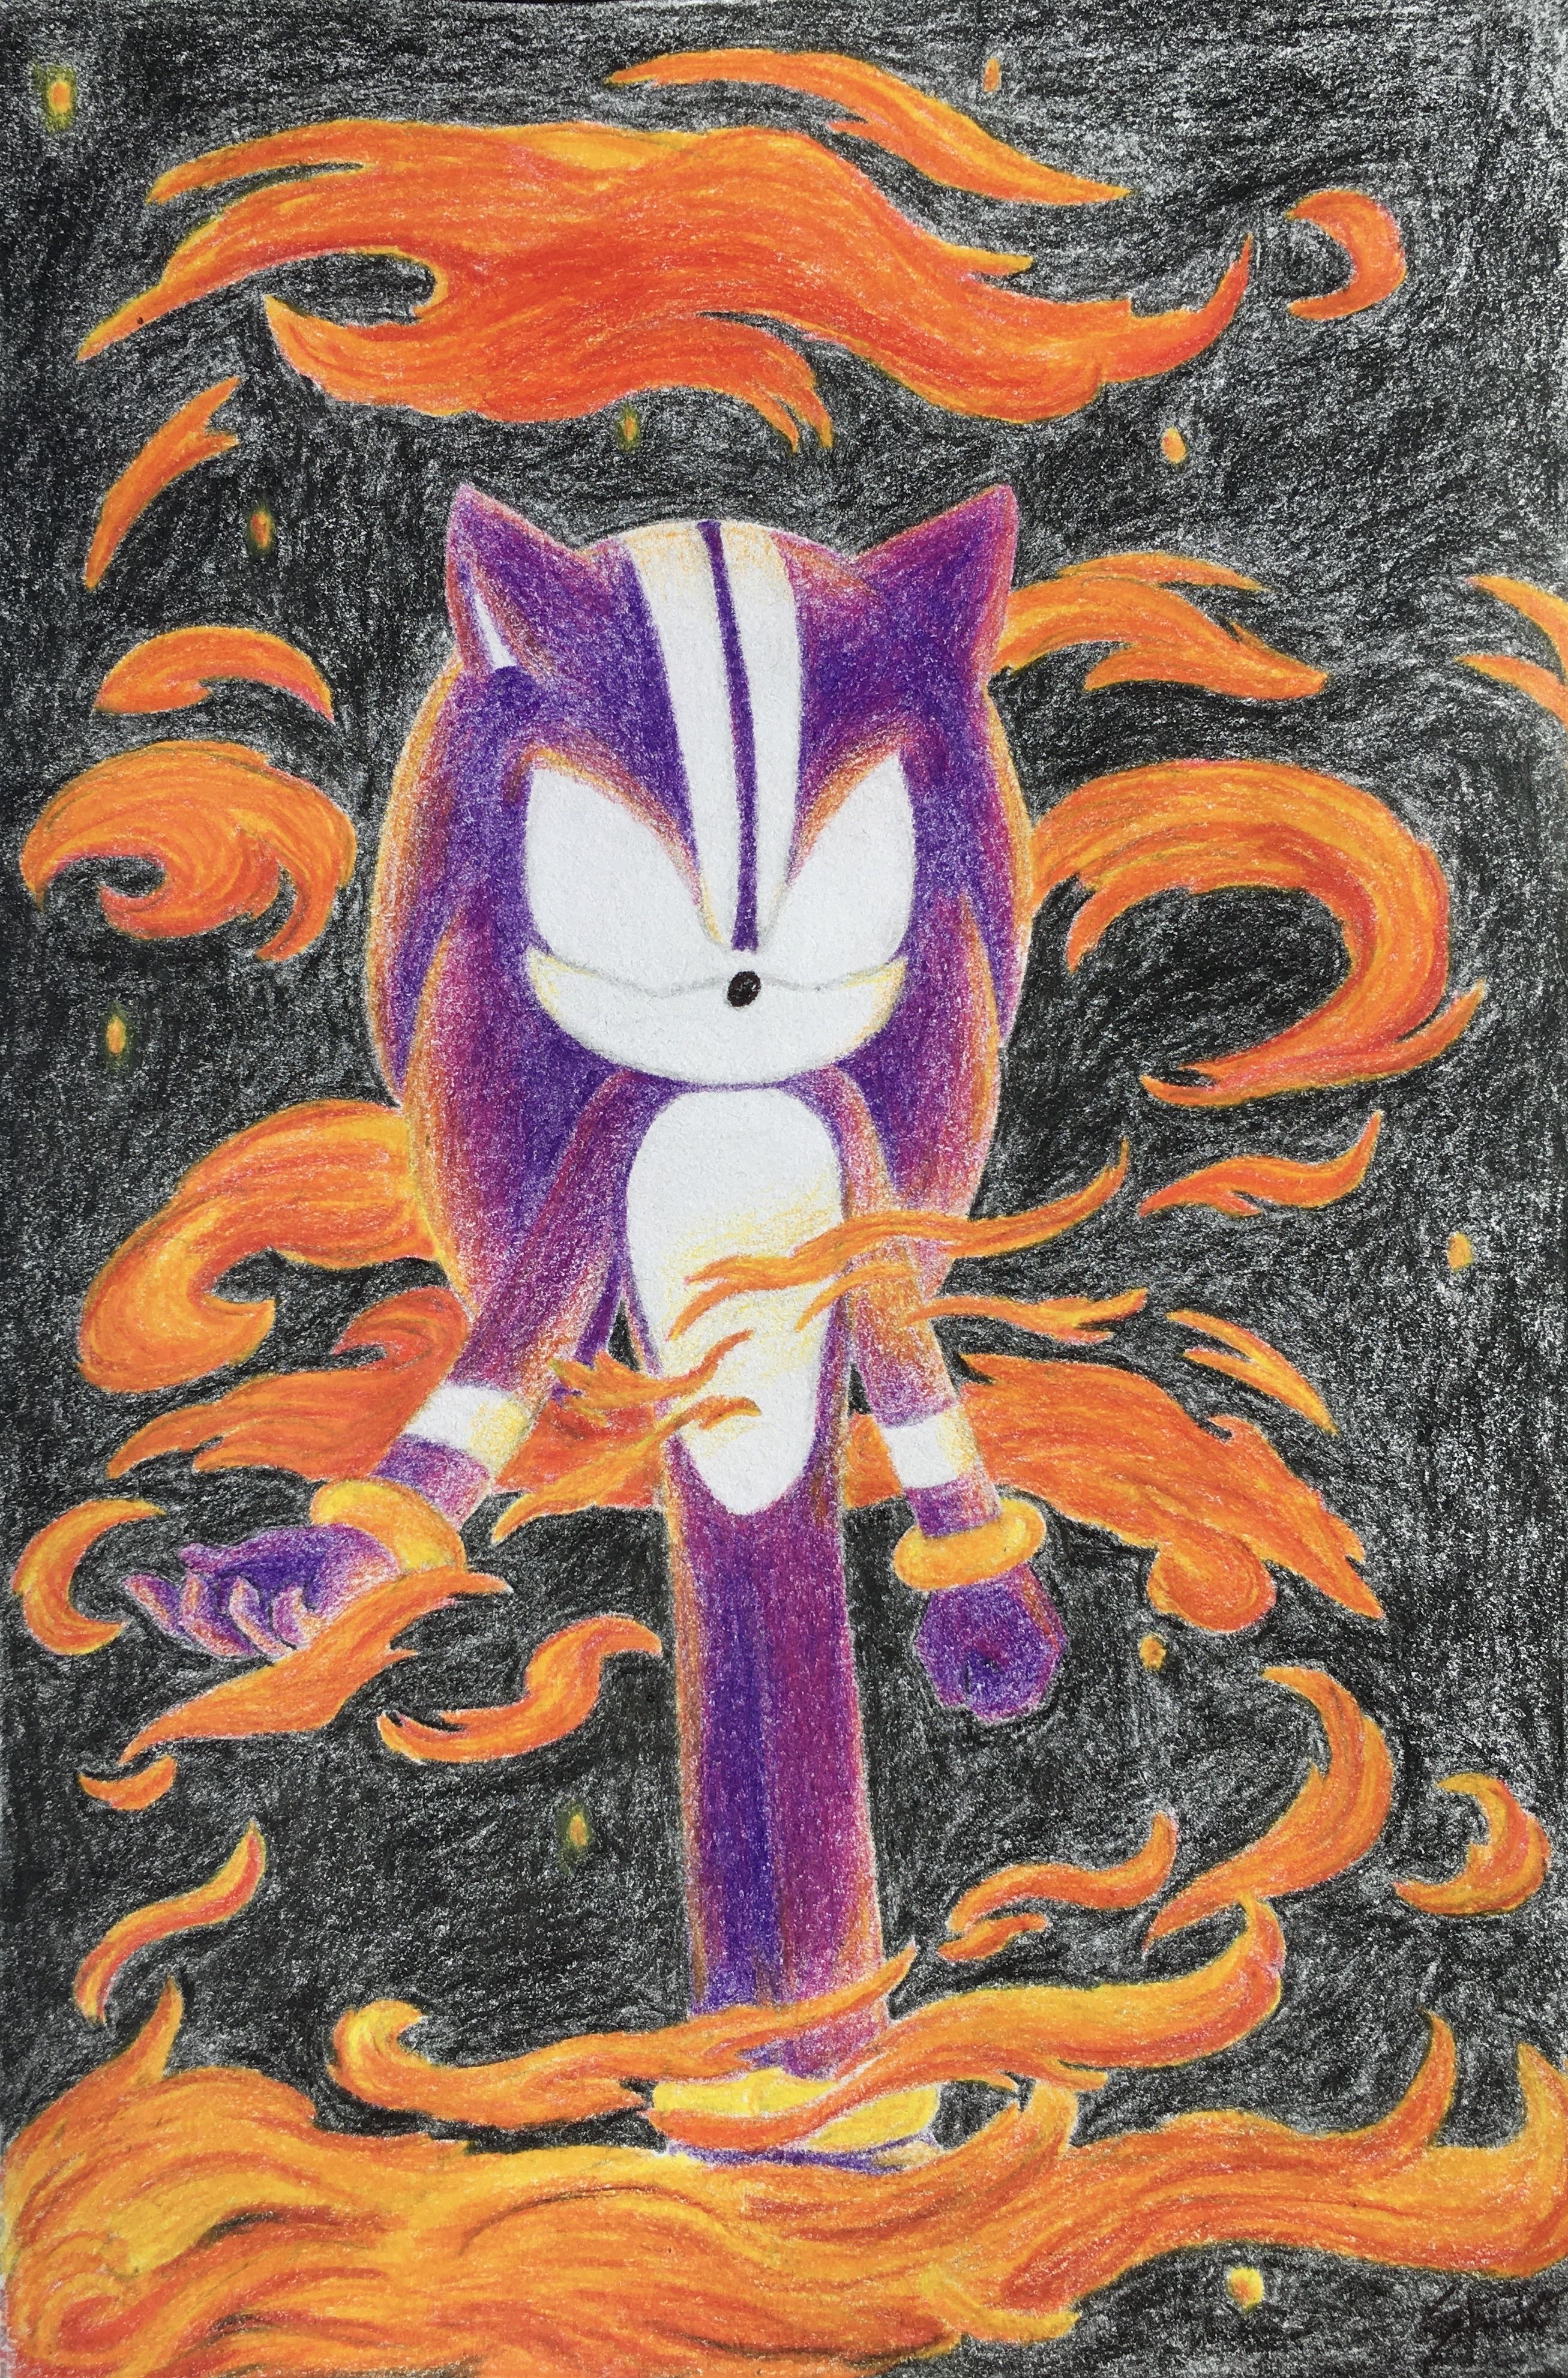 Darkspine Sonic by FlameHeart87 on DeviantArt